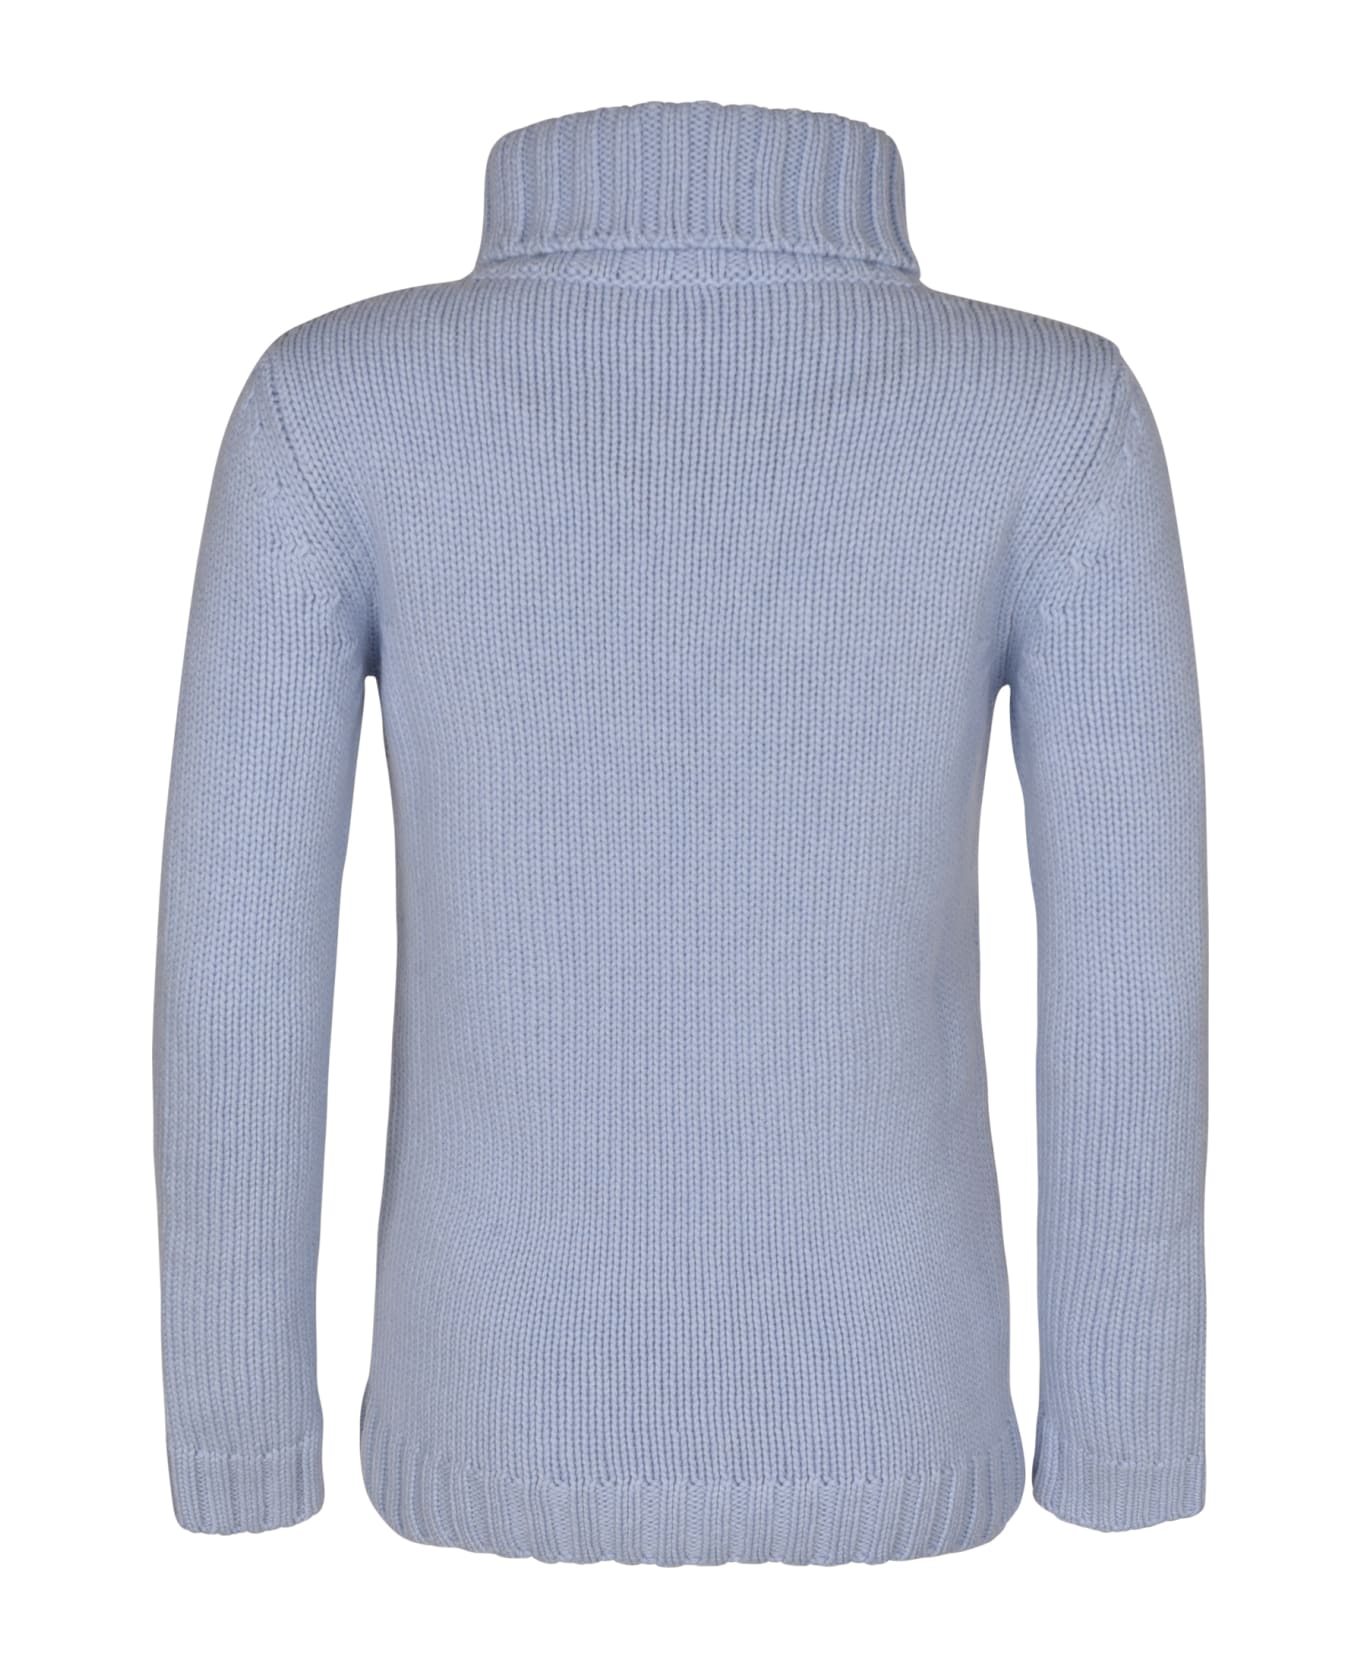 Base Rib Knit Plain Turtleneck Pullover - Light Blue